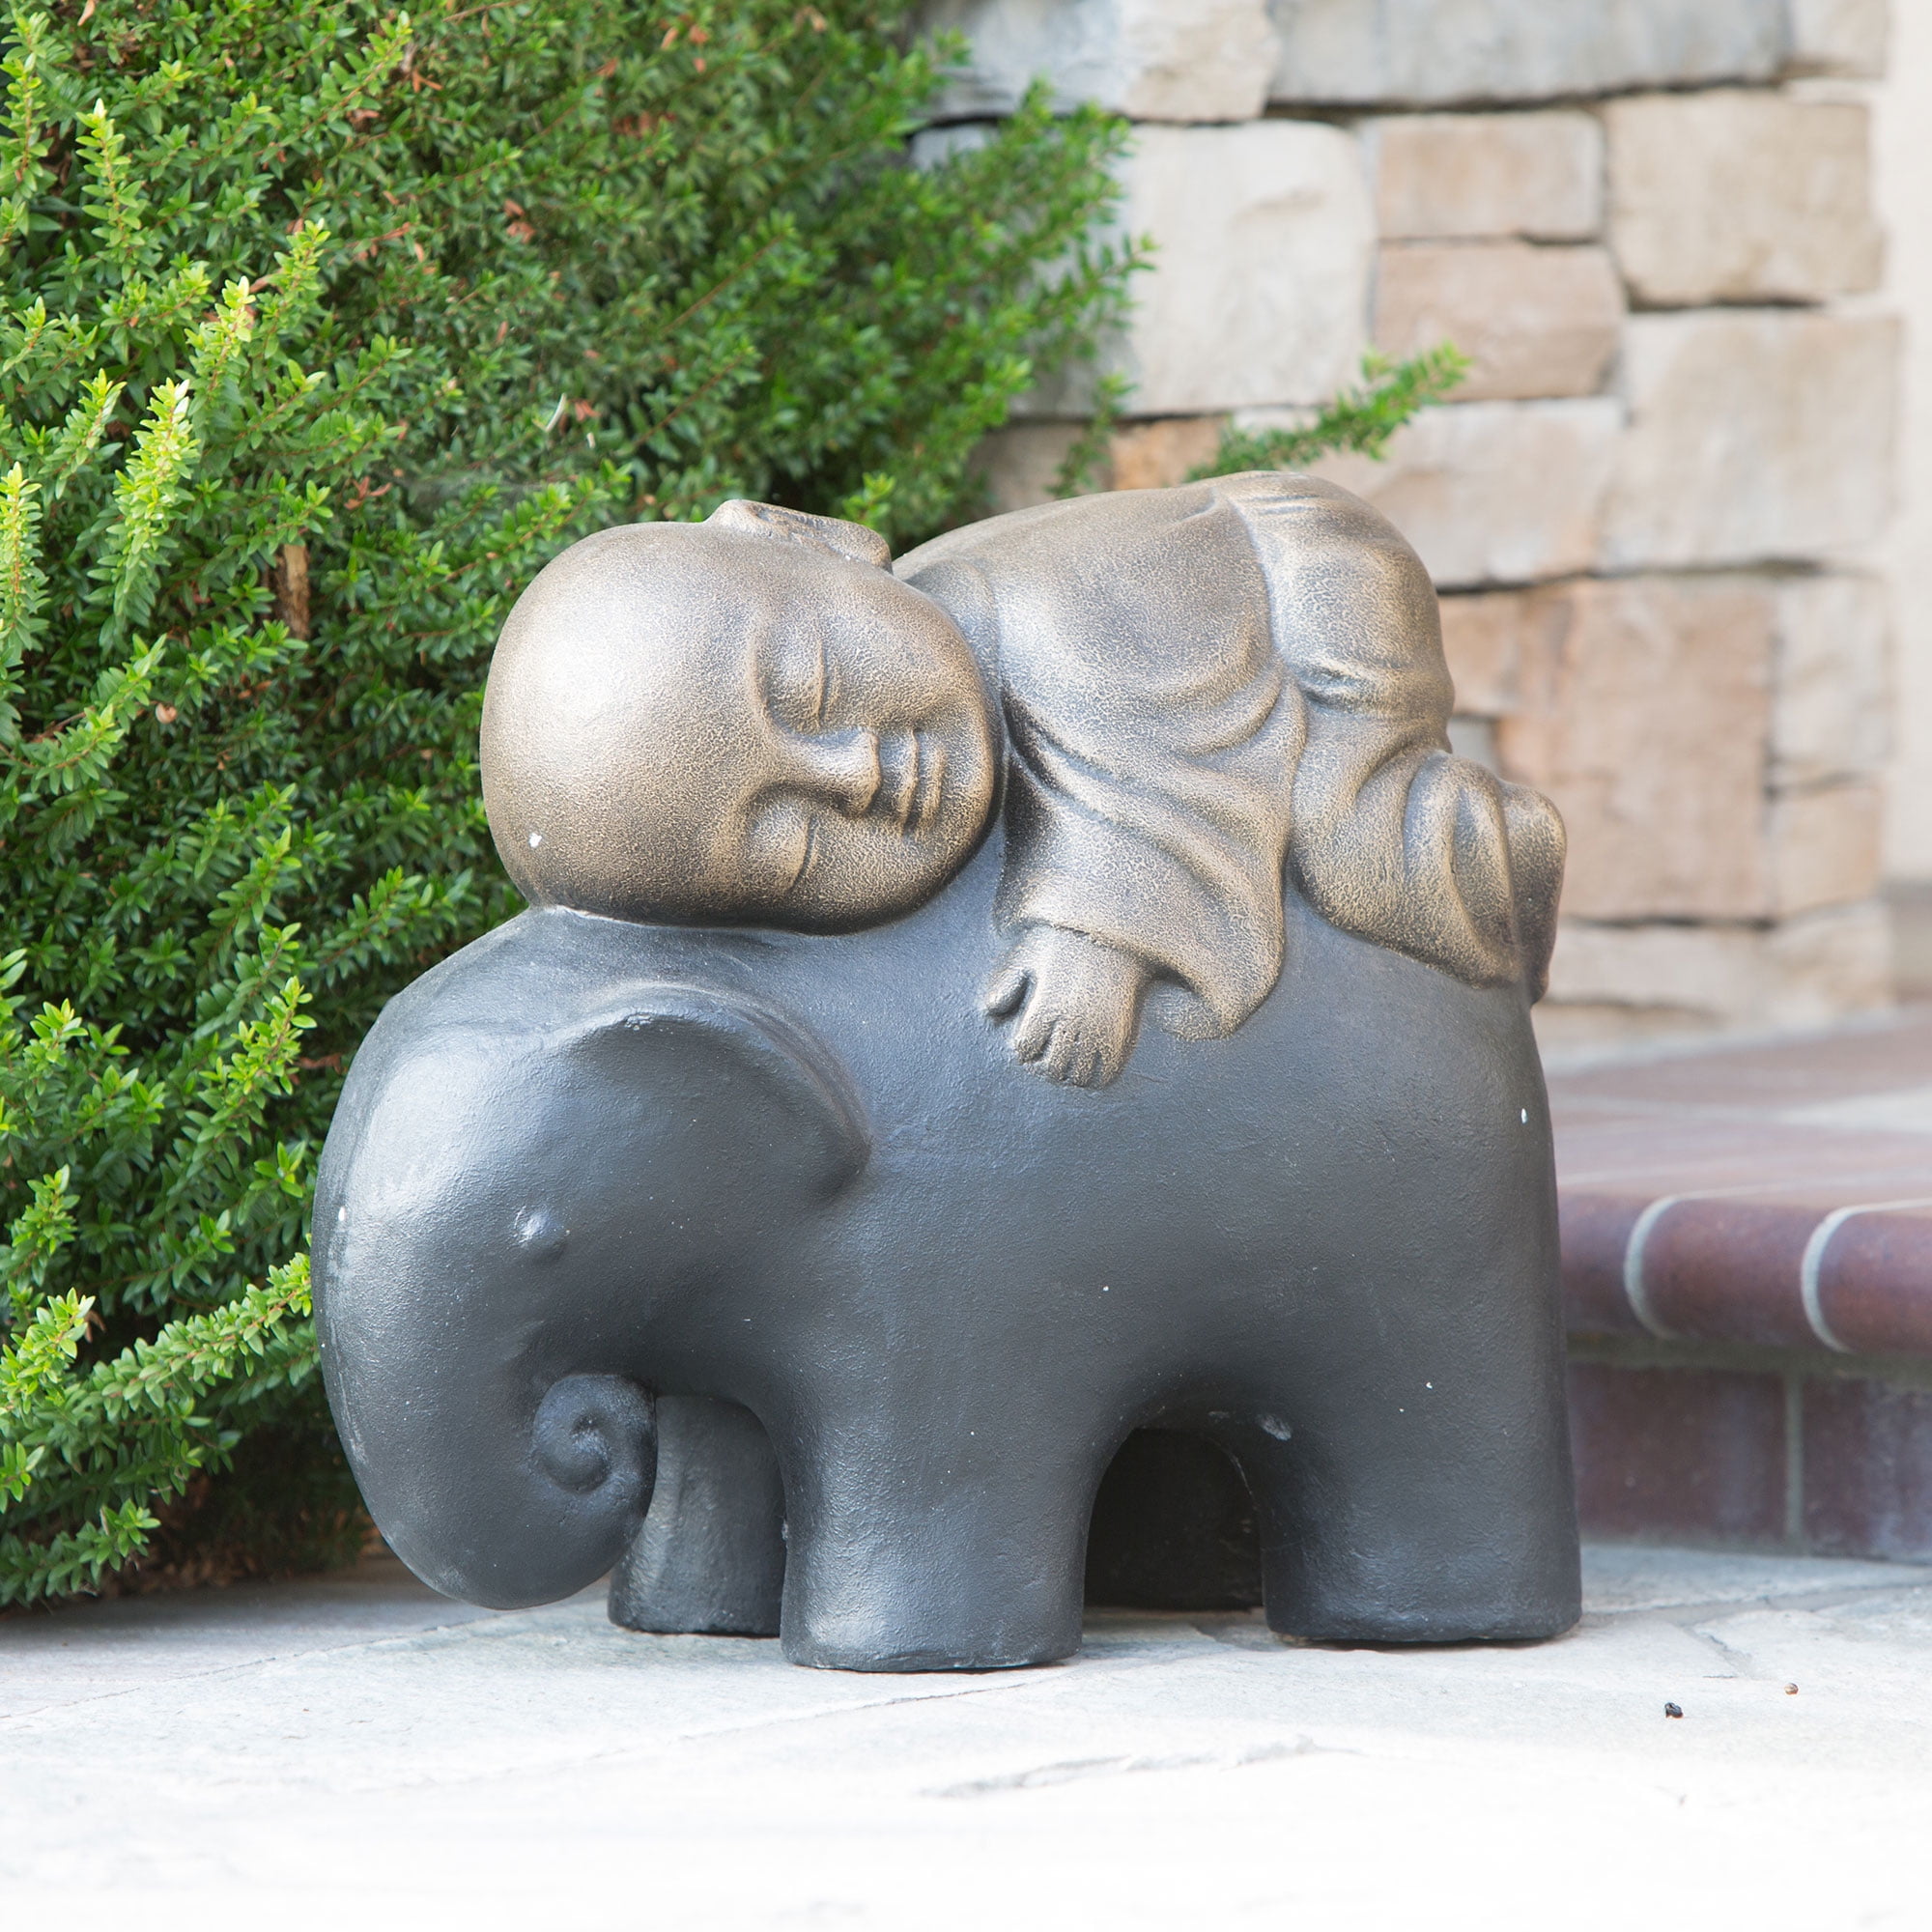 Shaolin Monk On Elephant Buddha Zen Garden Statues Good Luck